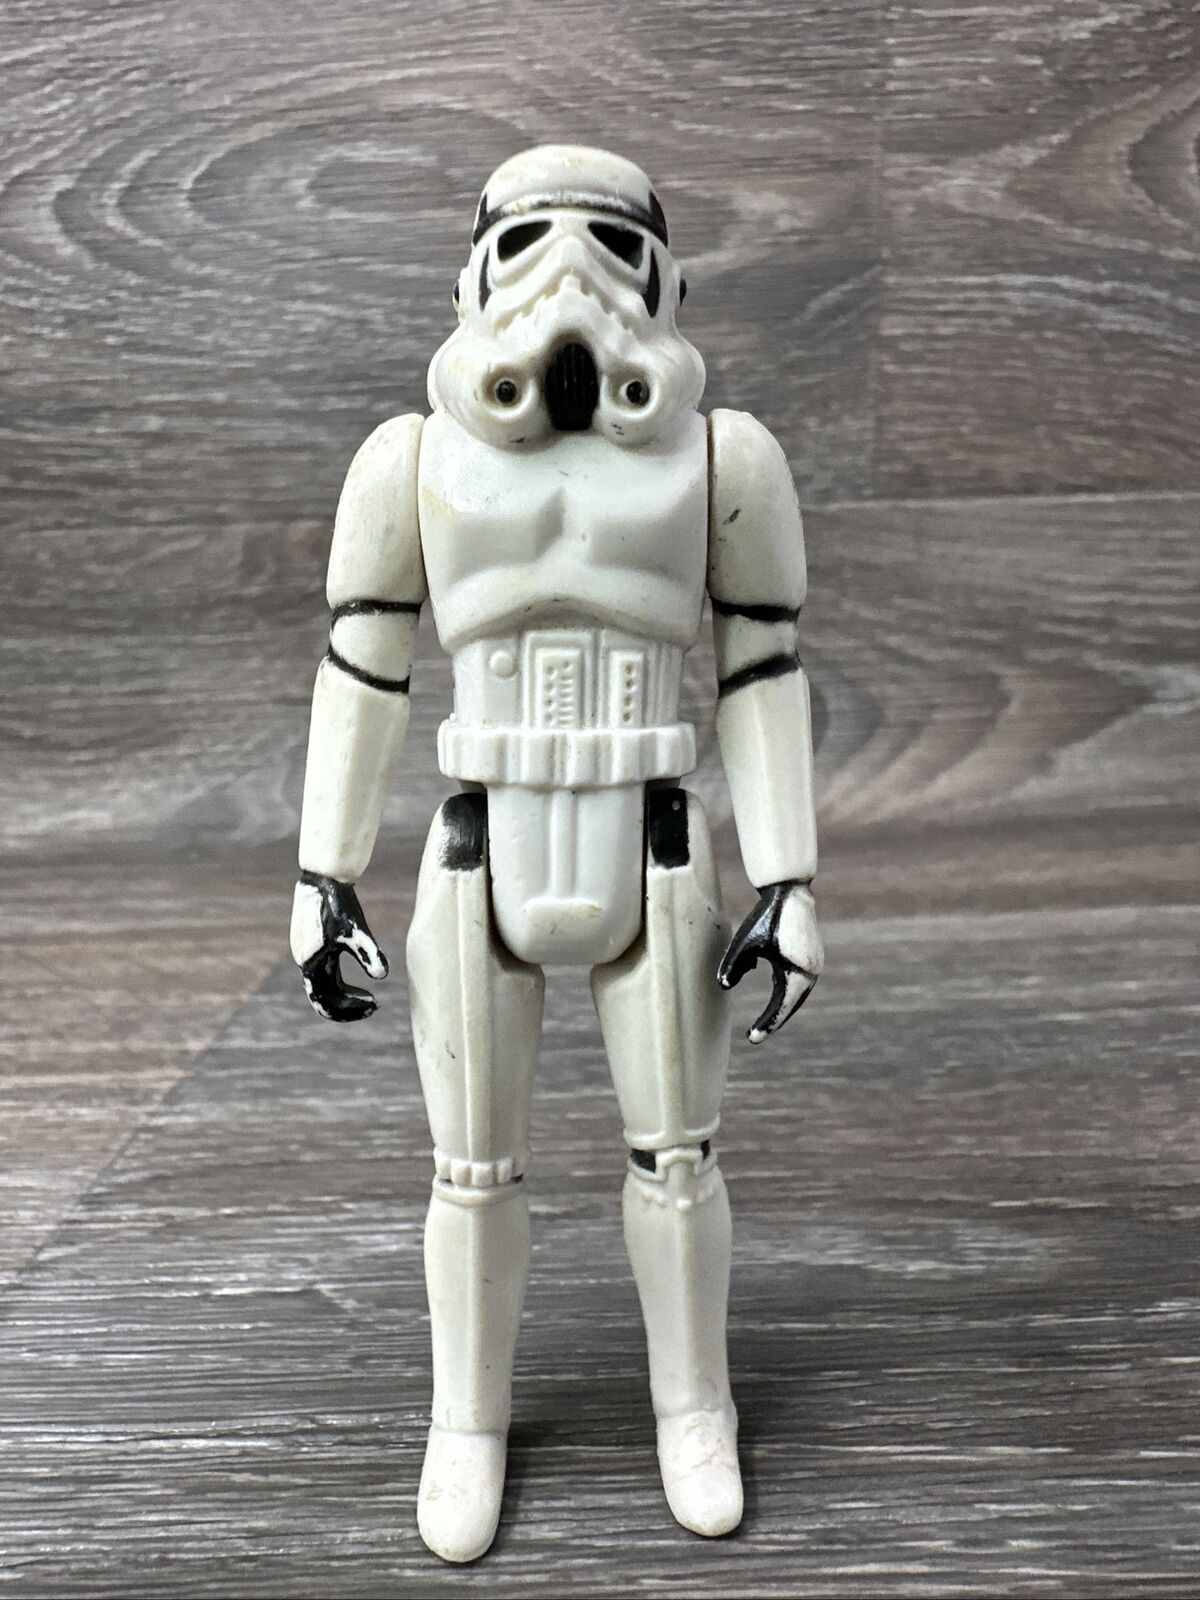 Star Wars Imperial Stormtrooper Action Figure 1977 Kenner Vintage